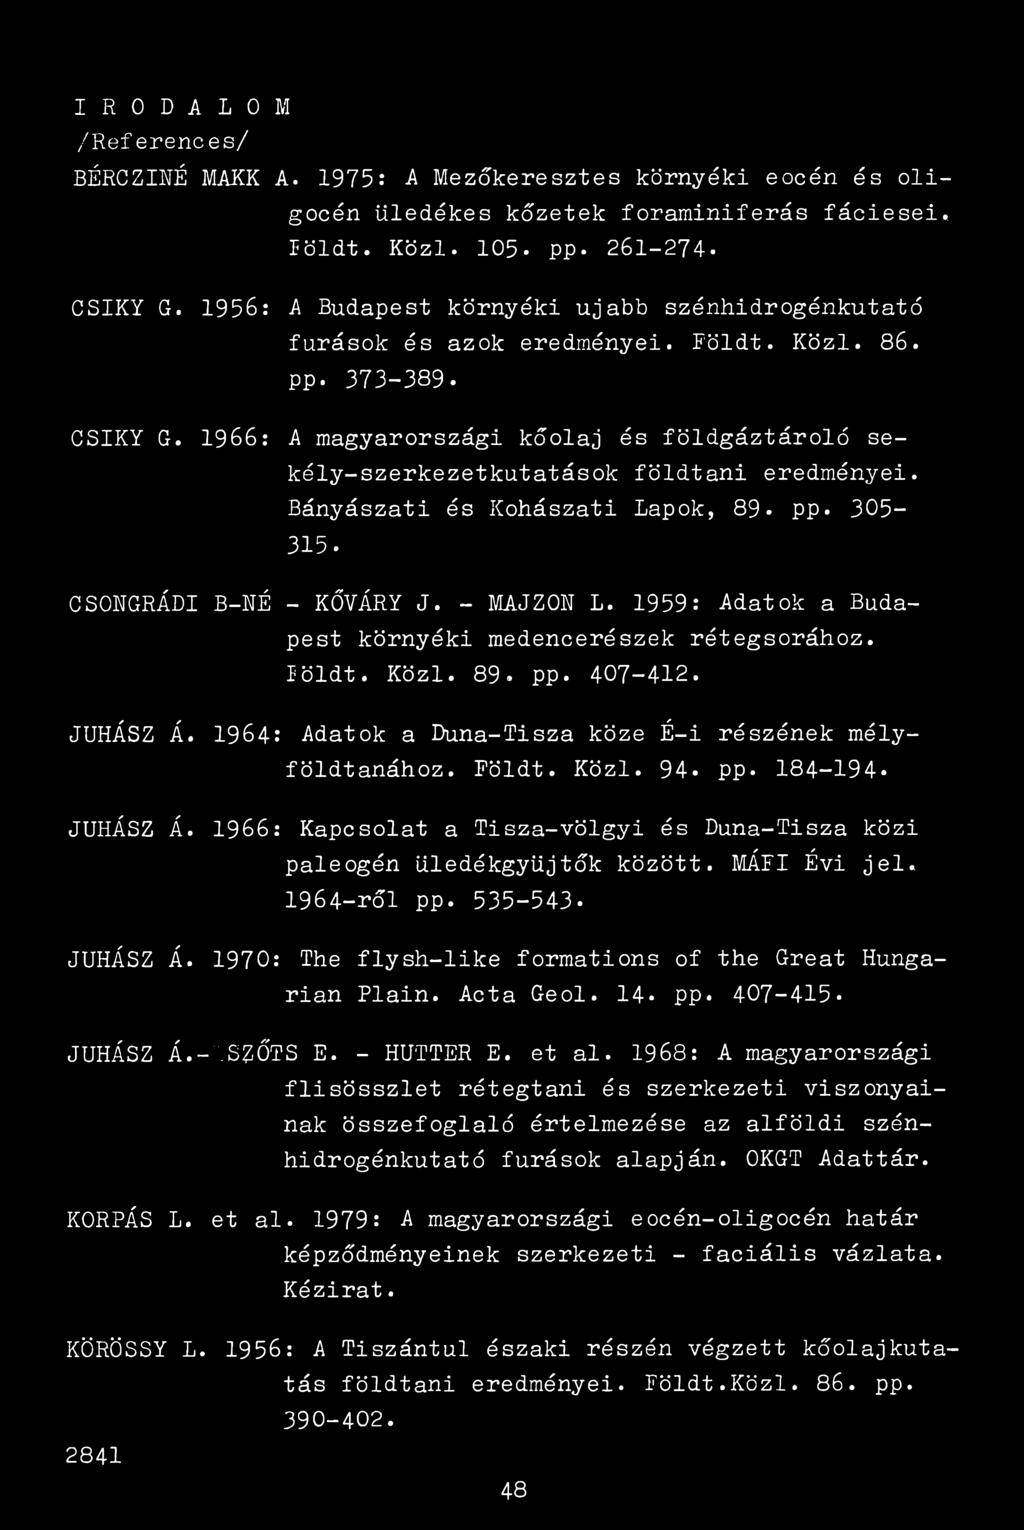 1966: A magyarországi kőolaj és földgáztároló sekély-szerkezetkutatások földtani eredményei. Bányászati és Kohászati Lapok, 89* pp. 305-315. CSONGRÁDI B-NÉ - KÓVÁRY J. - MAJZON L.